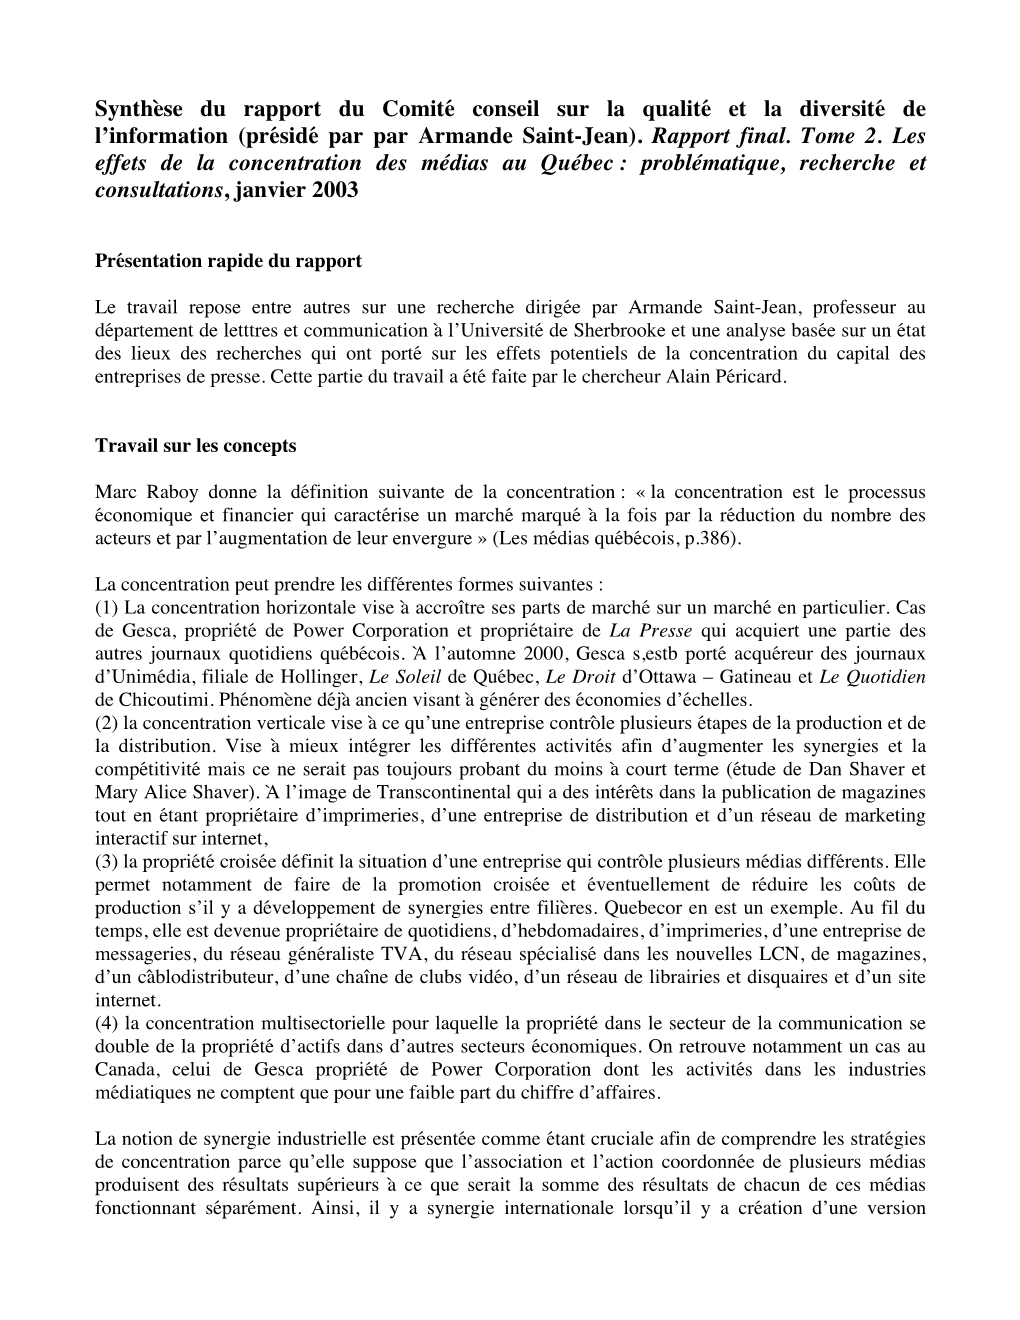 Synthèse Du Rapport Du Comité Conseil Sur La Qualité Et La Diversité De L’Information (Présidé Par Par Armande Saint-Jean)